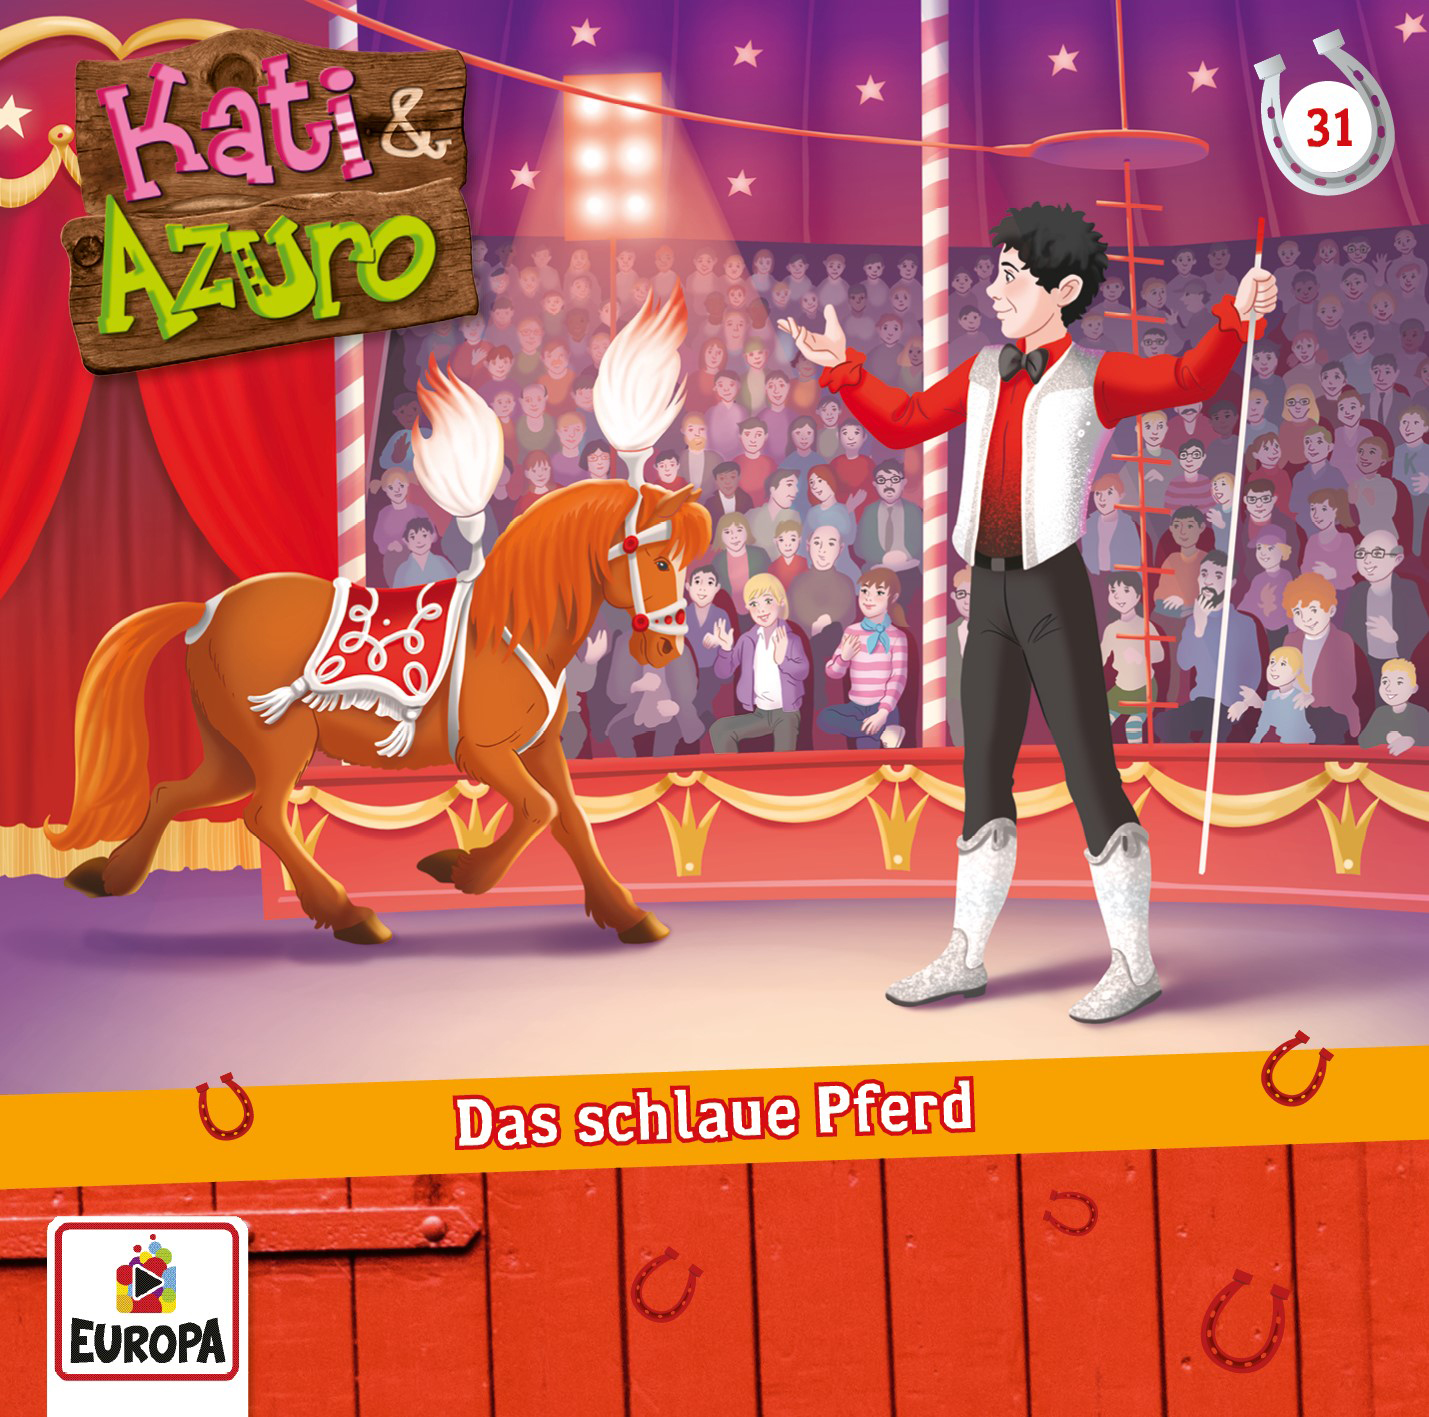 Kati & Azuro: Das schlaue Pferd